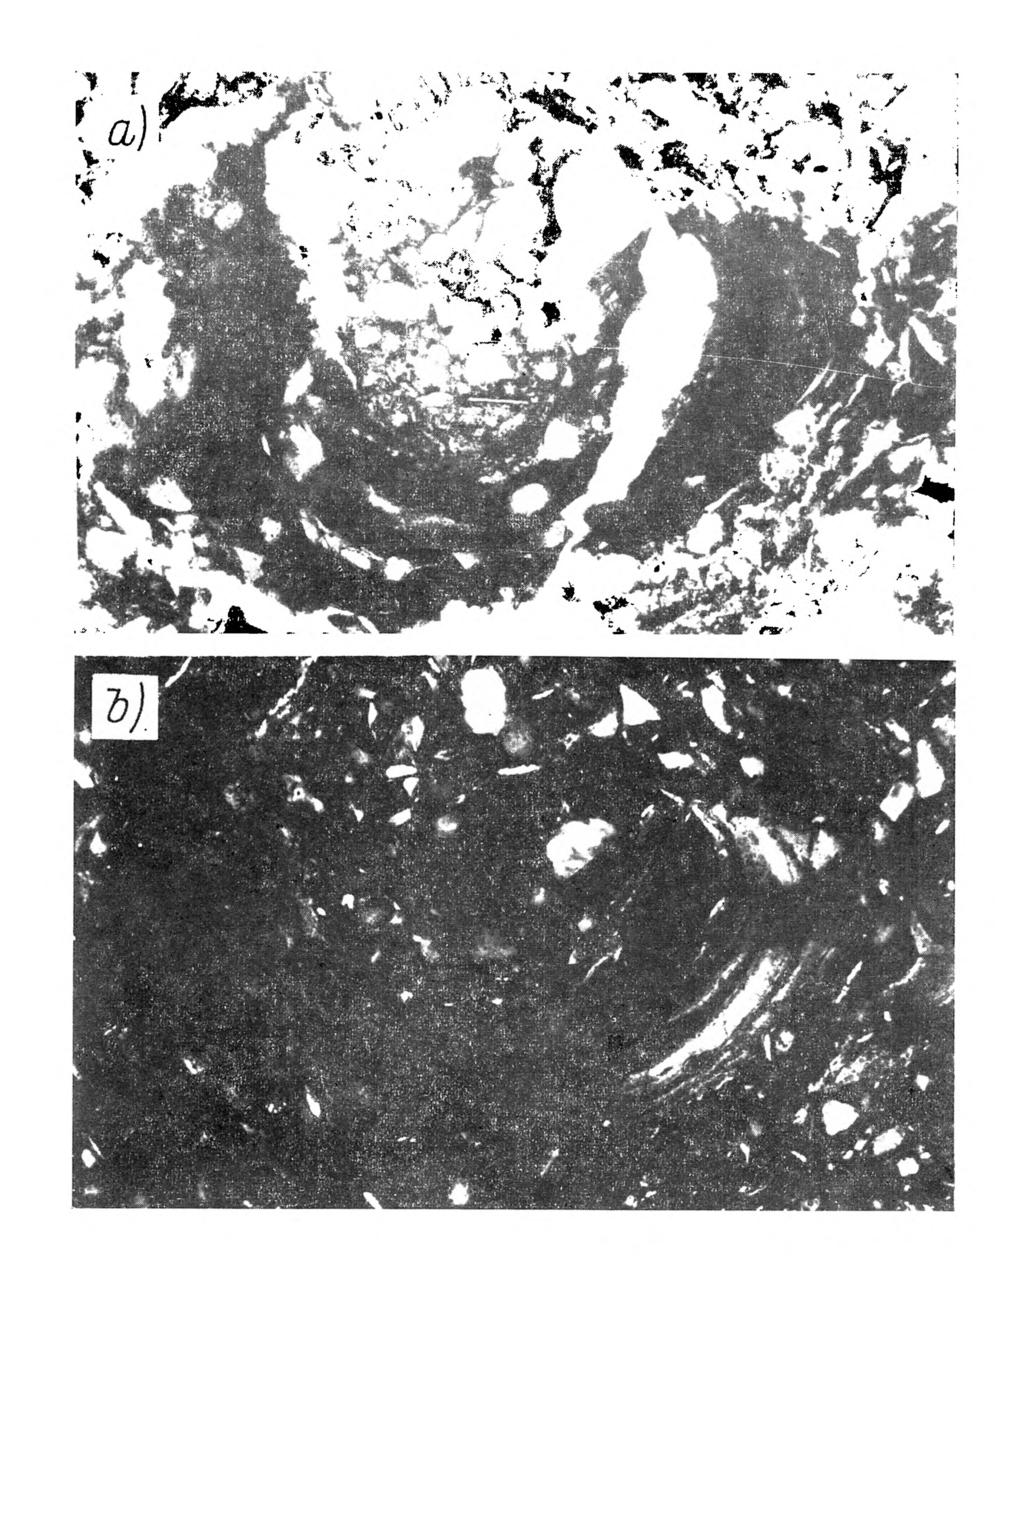 Rys. 9. M ikrom orfologia gleby bielicow ej w ytworzonej z utworu pyłow ego ilastego. Poziom Bh, głębokość próbki 44-50 cm. Plazm a typu vosepic dobrze wyrażona.